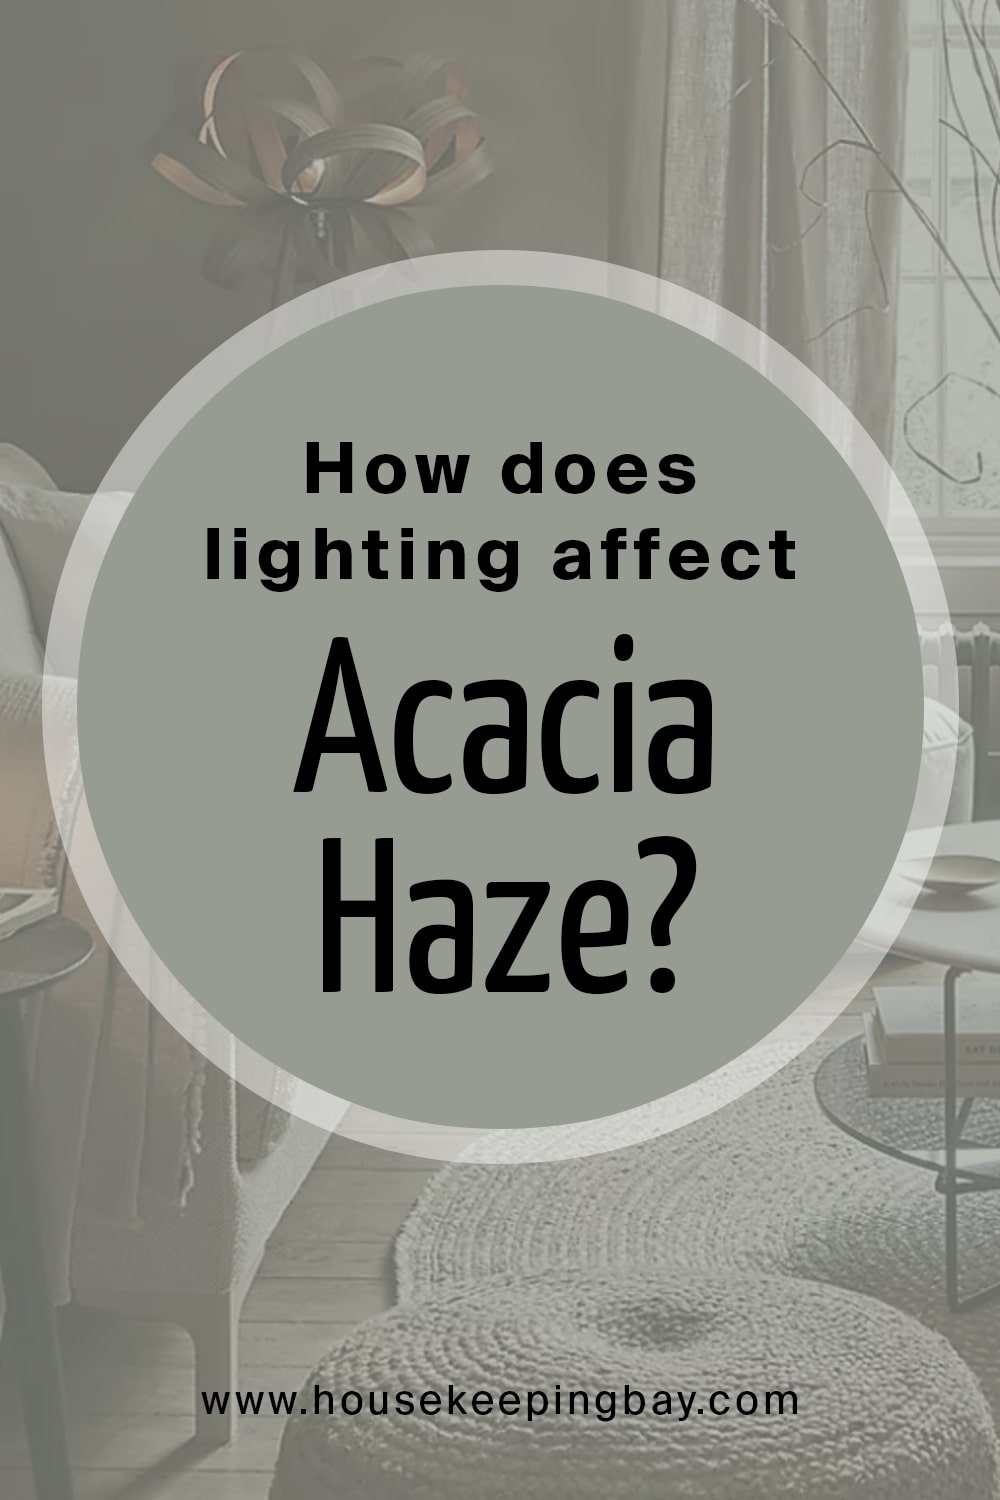 How does lighting affect Acacia Haze